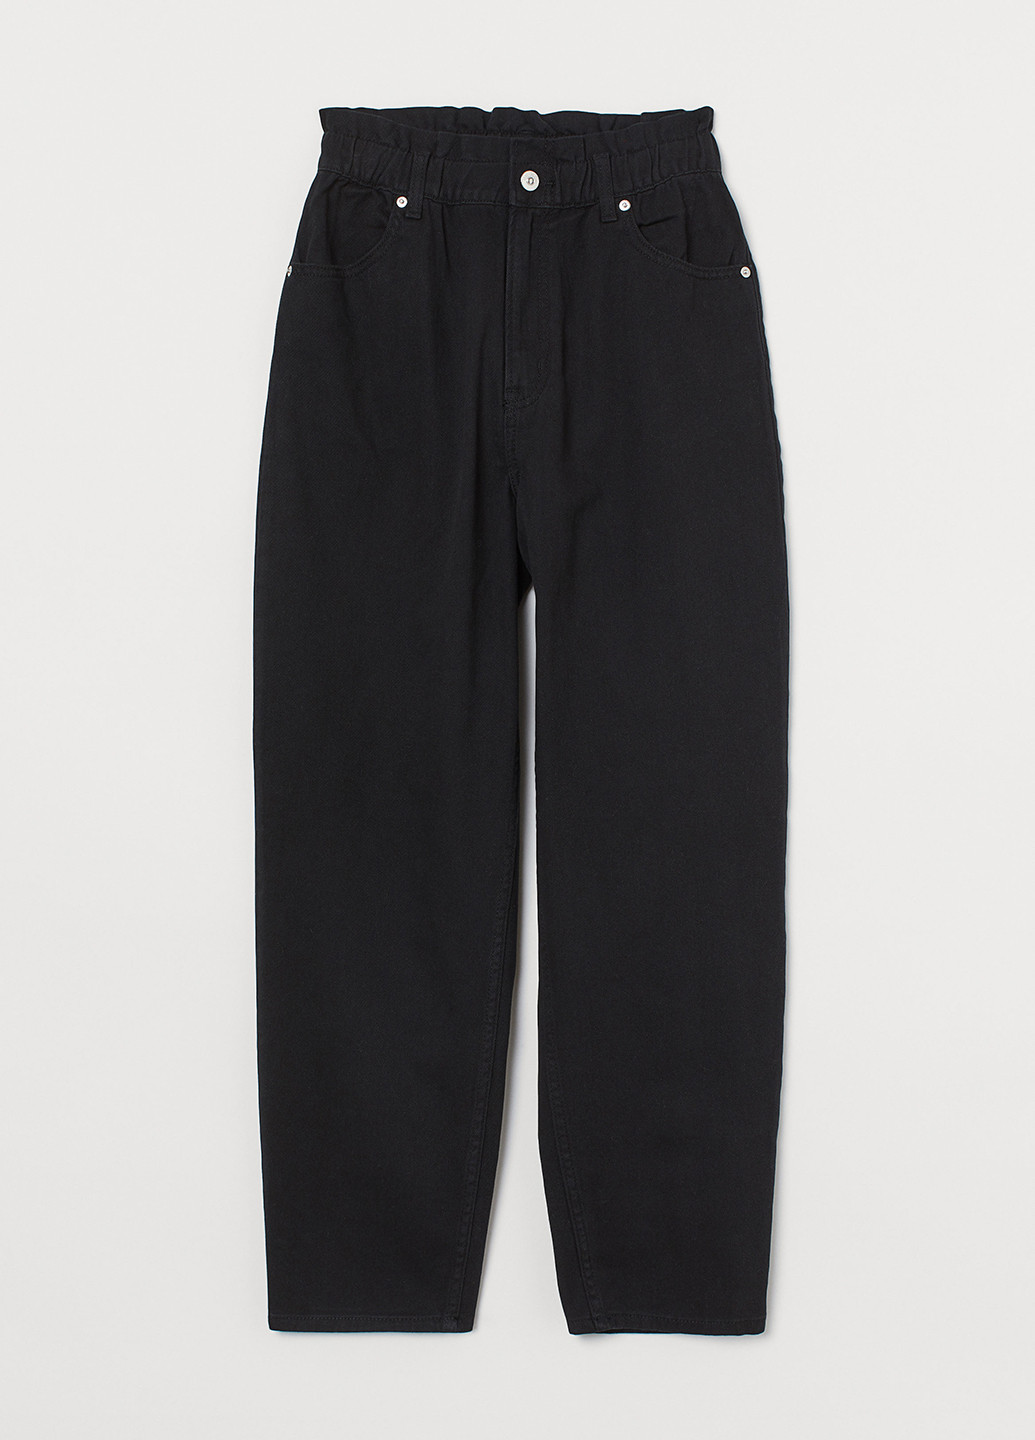 Черные демисезонные мом фит джинсы H&M